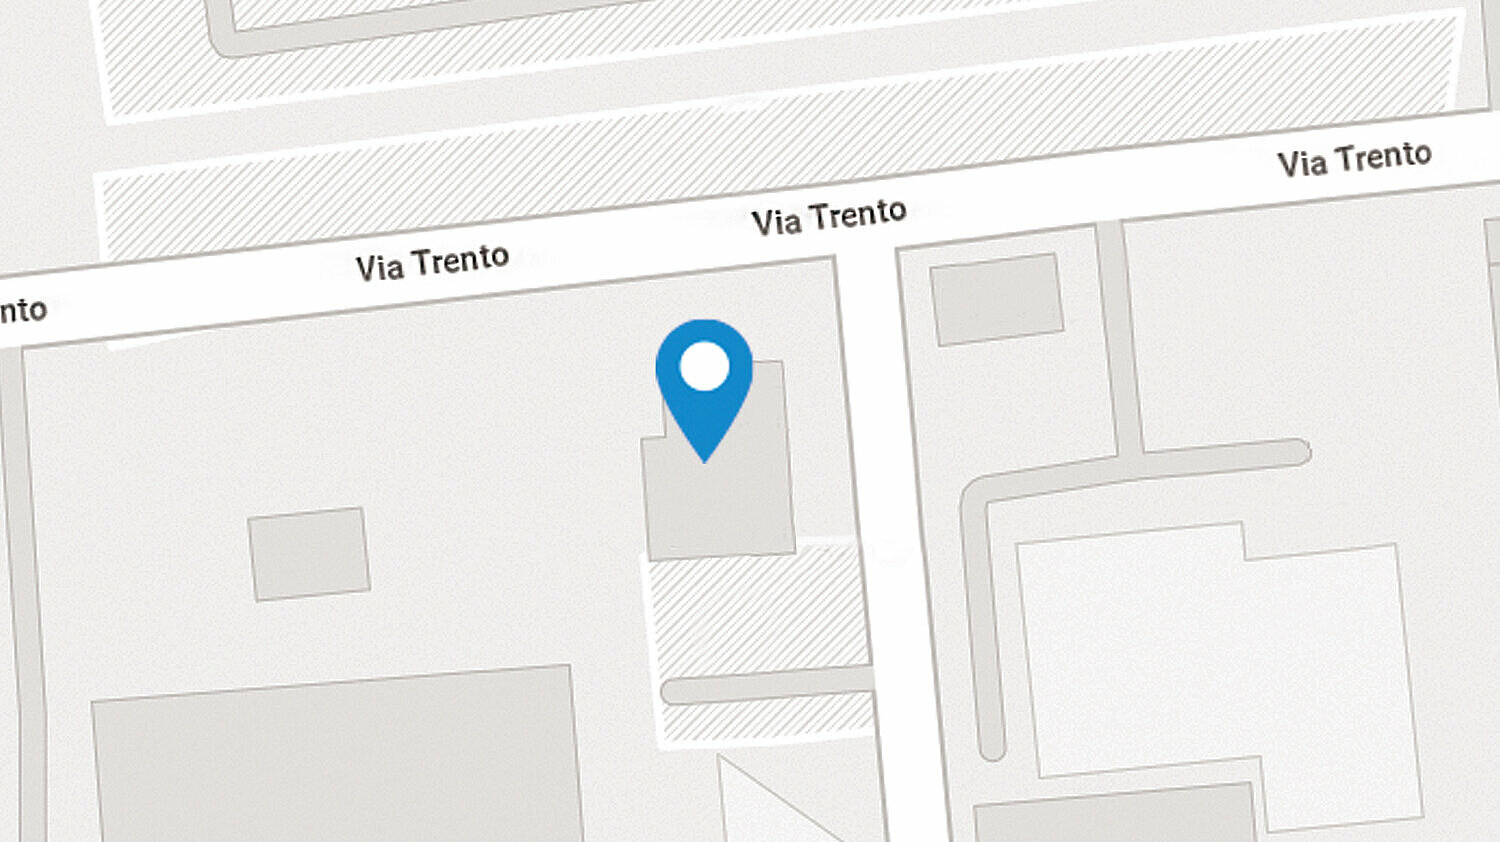 Mappa con la posizione di SIKO Italia a Rho, Milano